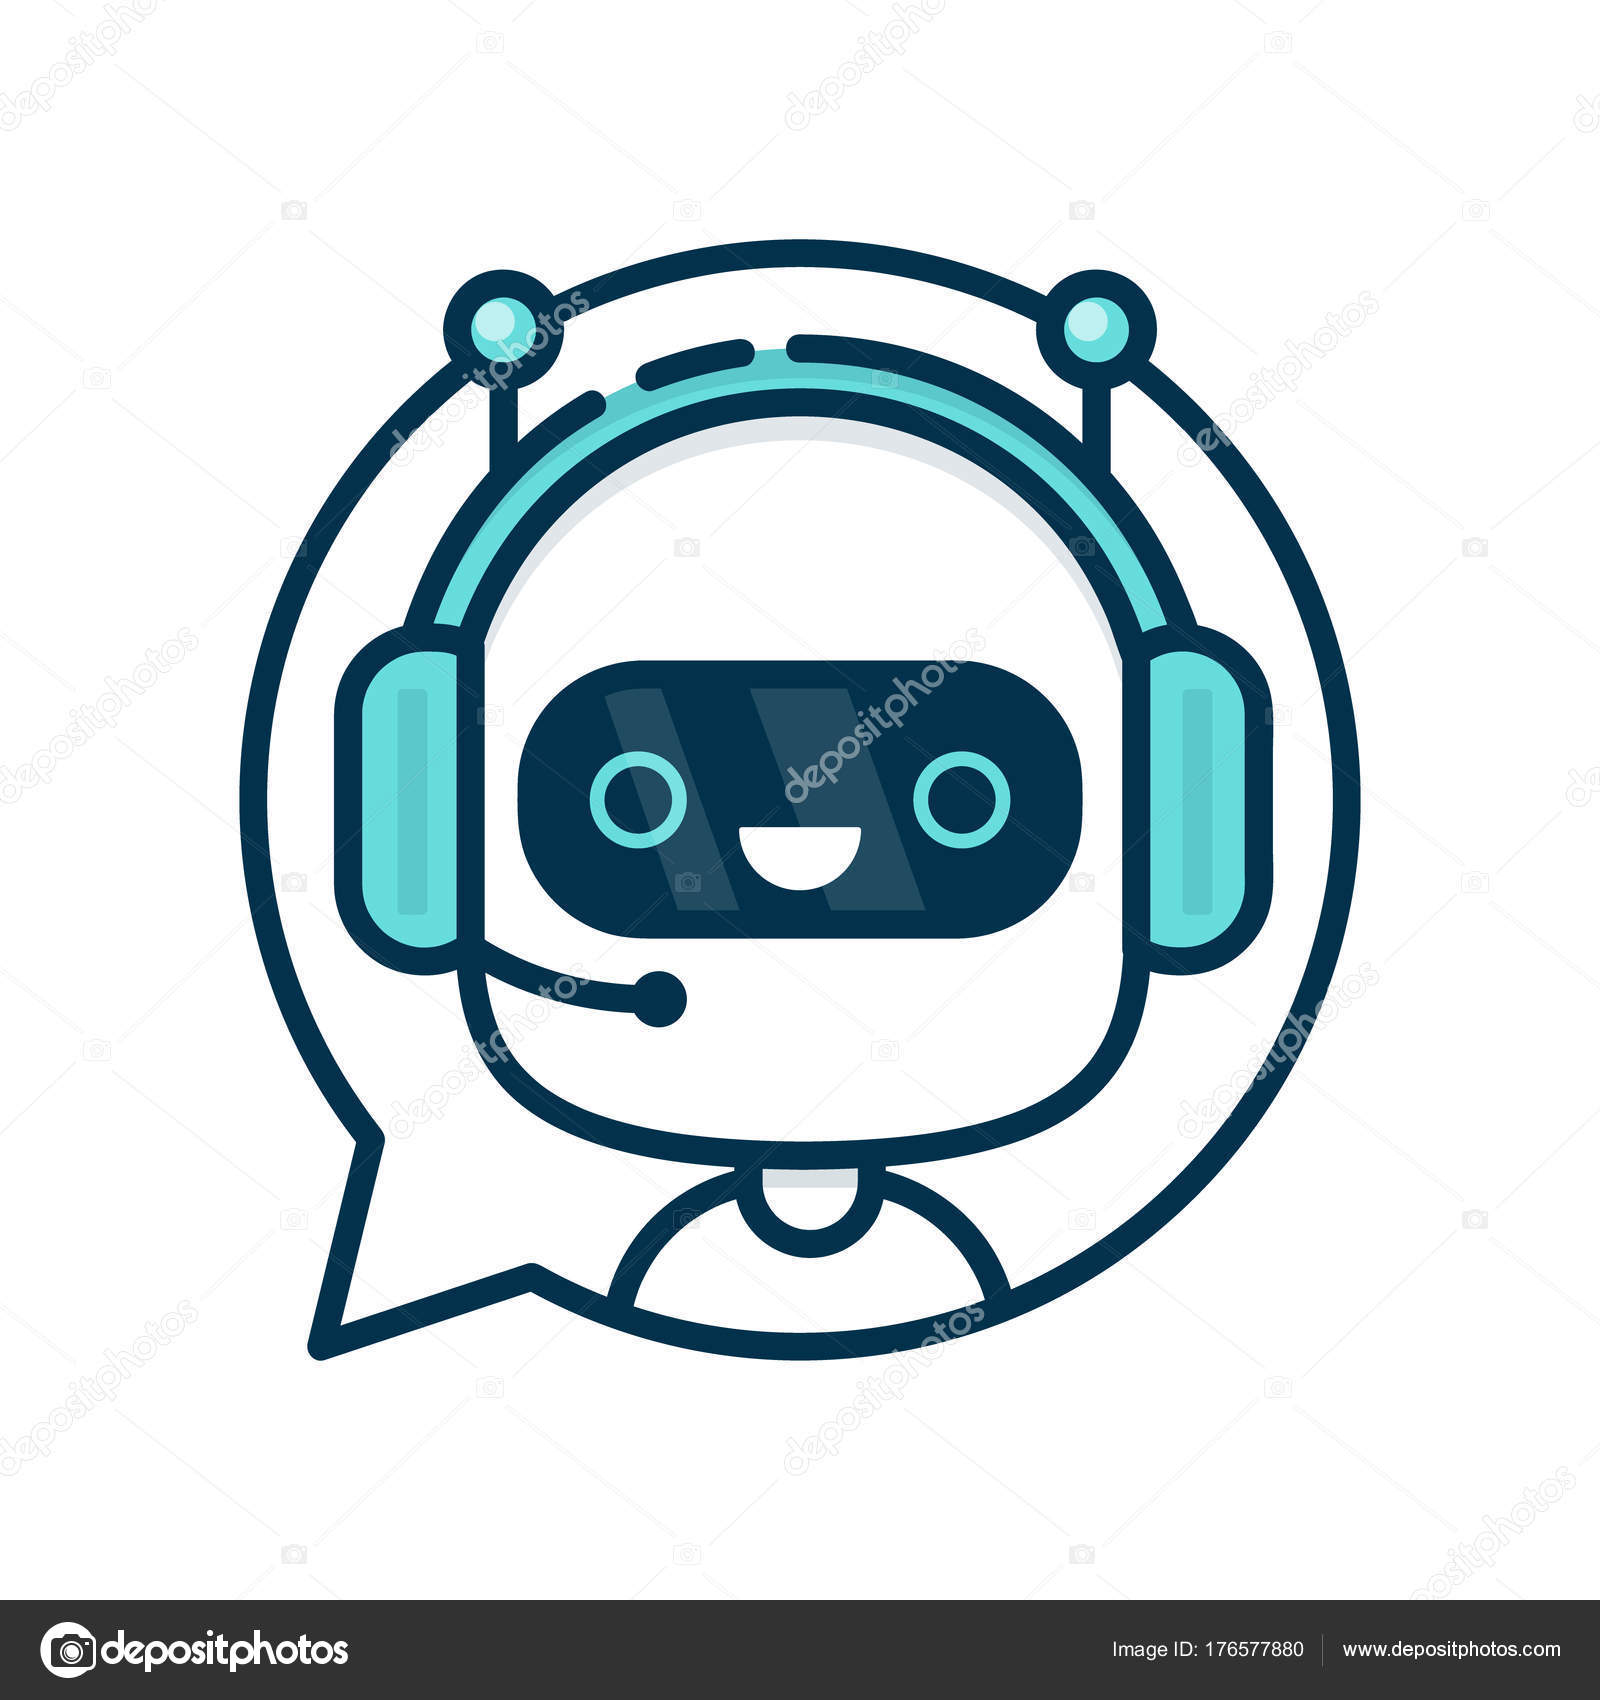 Vecteur Stock Cute smiling robot, chat bot say hi